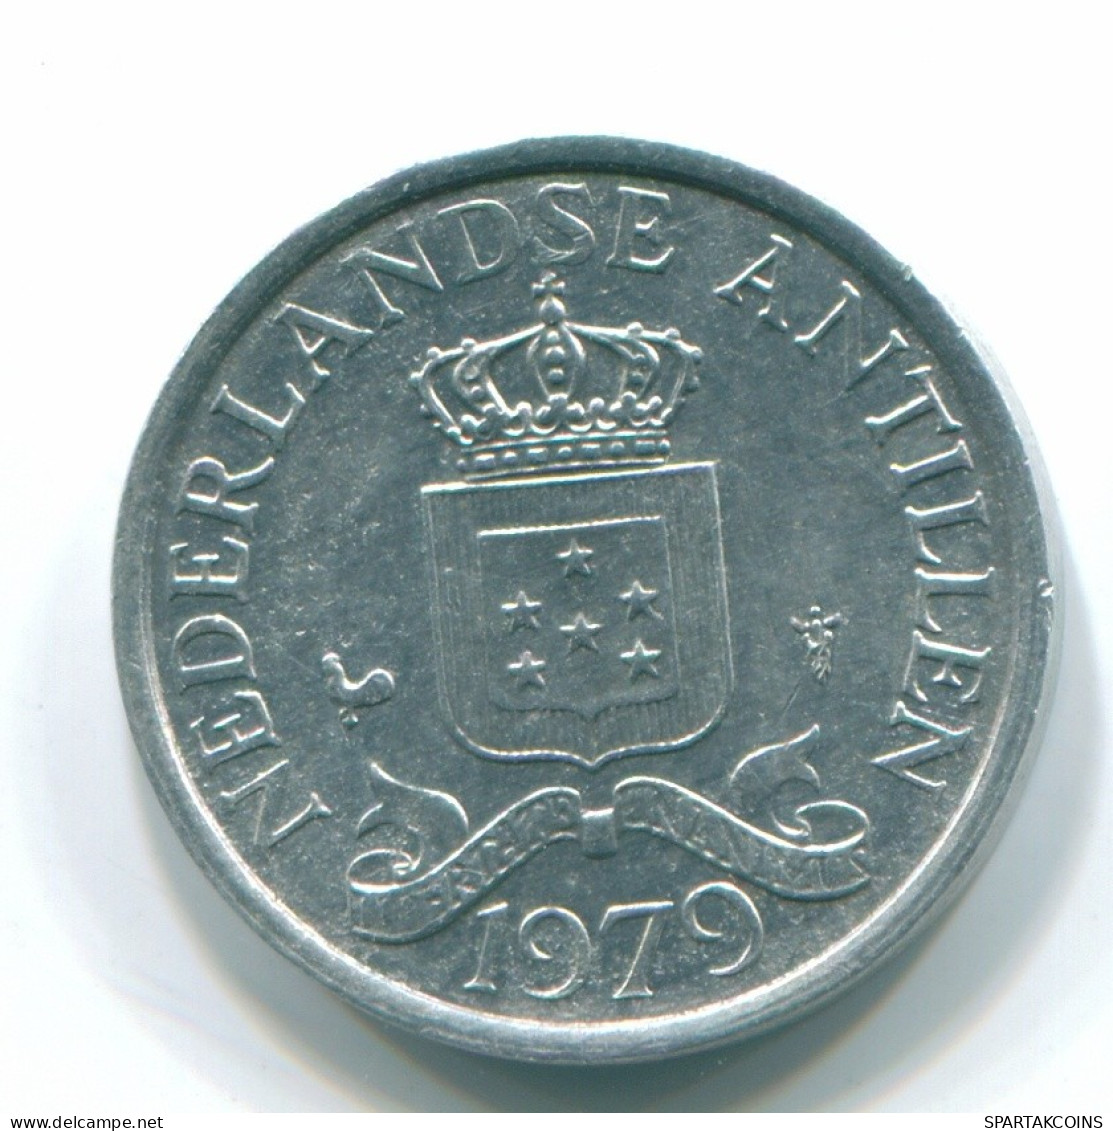 1 CENT 1979 NIEDERLÄNDISCHE ANTILLEN Aluminium Koloniale Münze #S11172.D.A - Netherlands Antilles